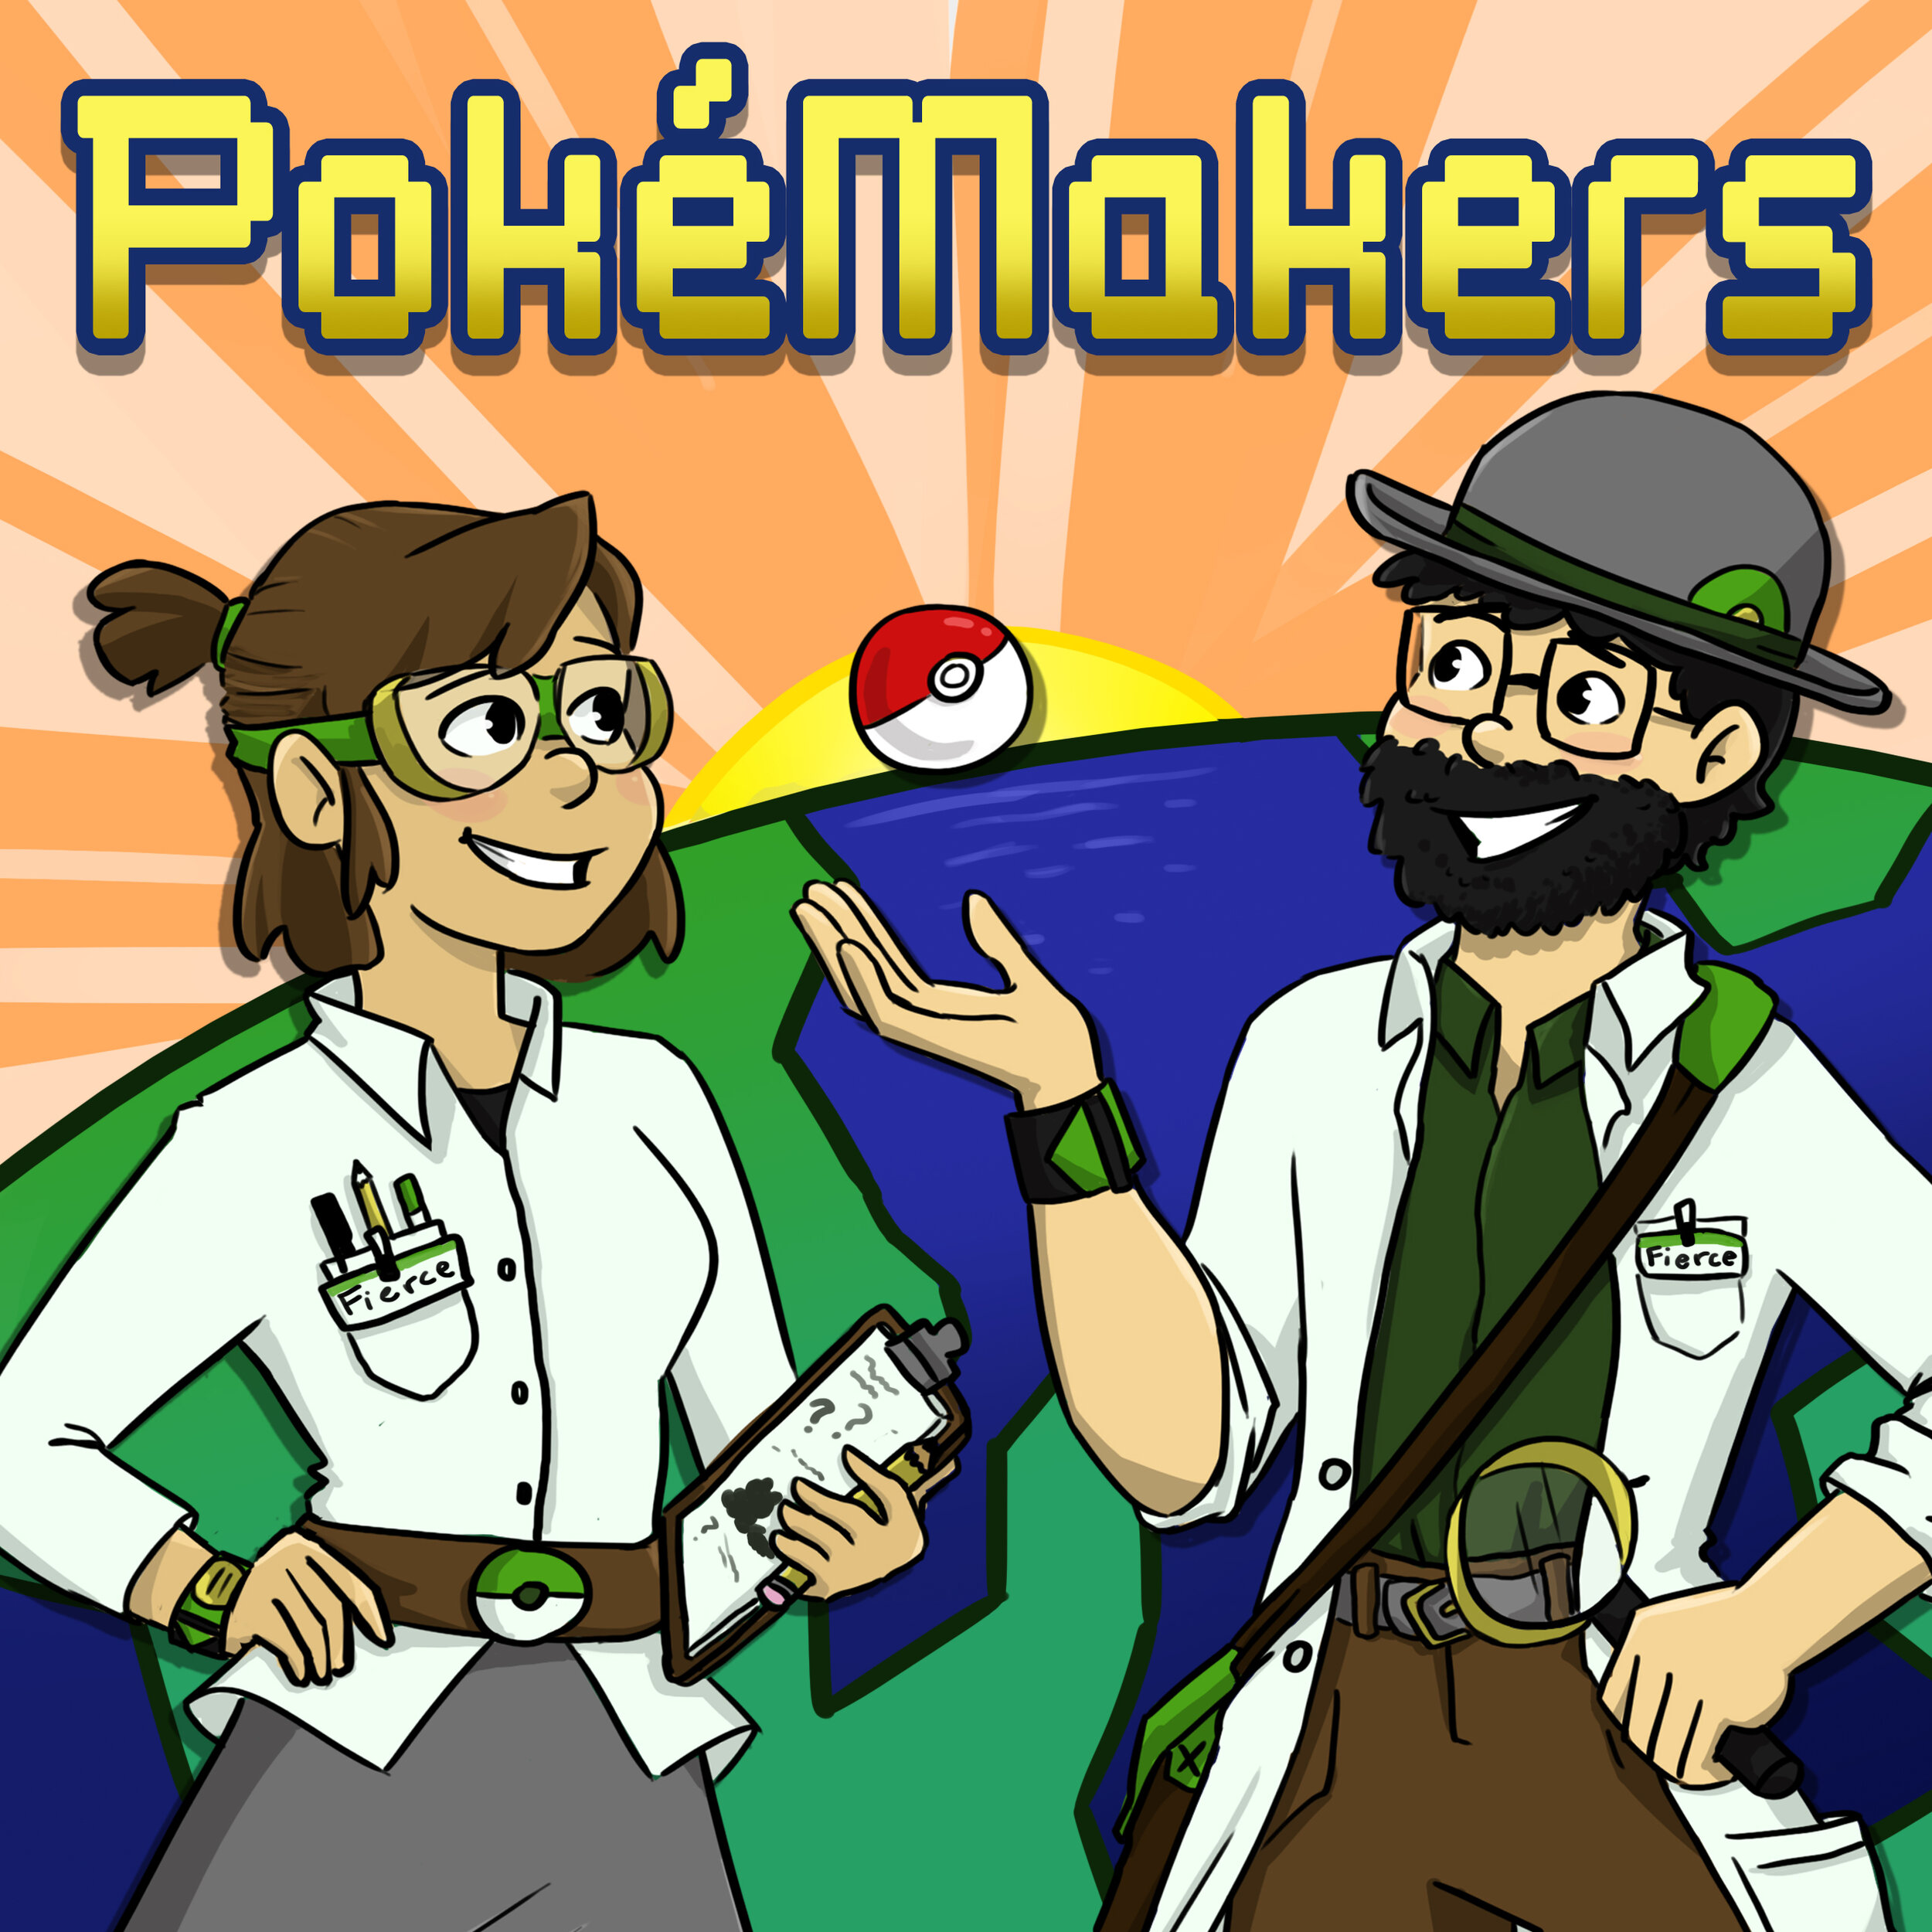 pokemakers cover art.jpg